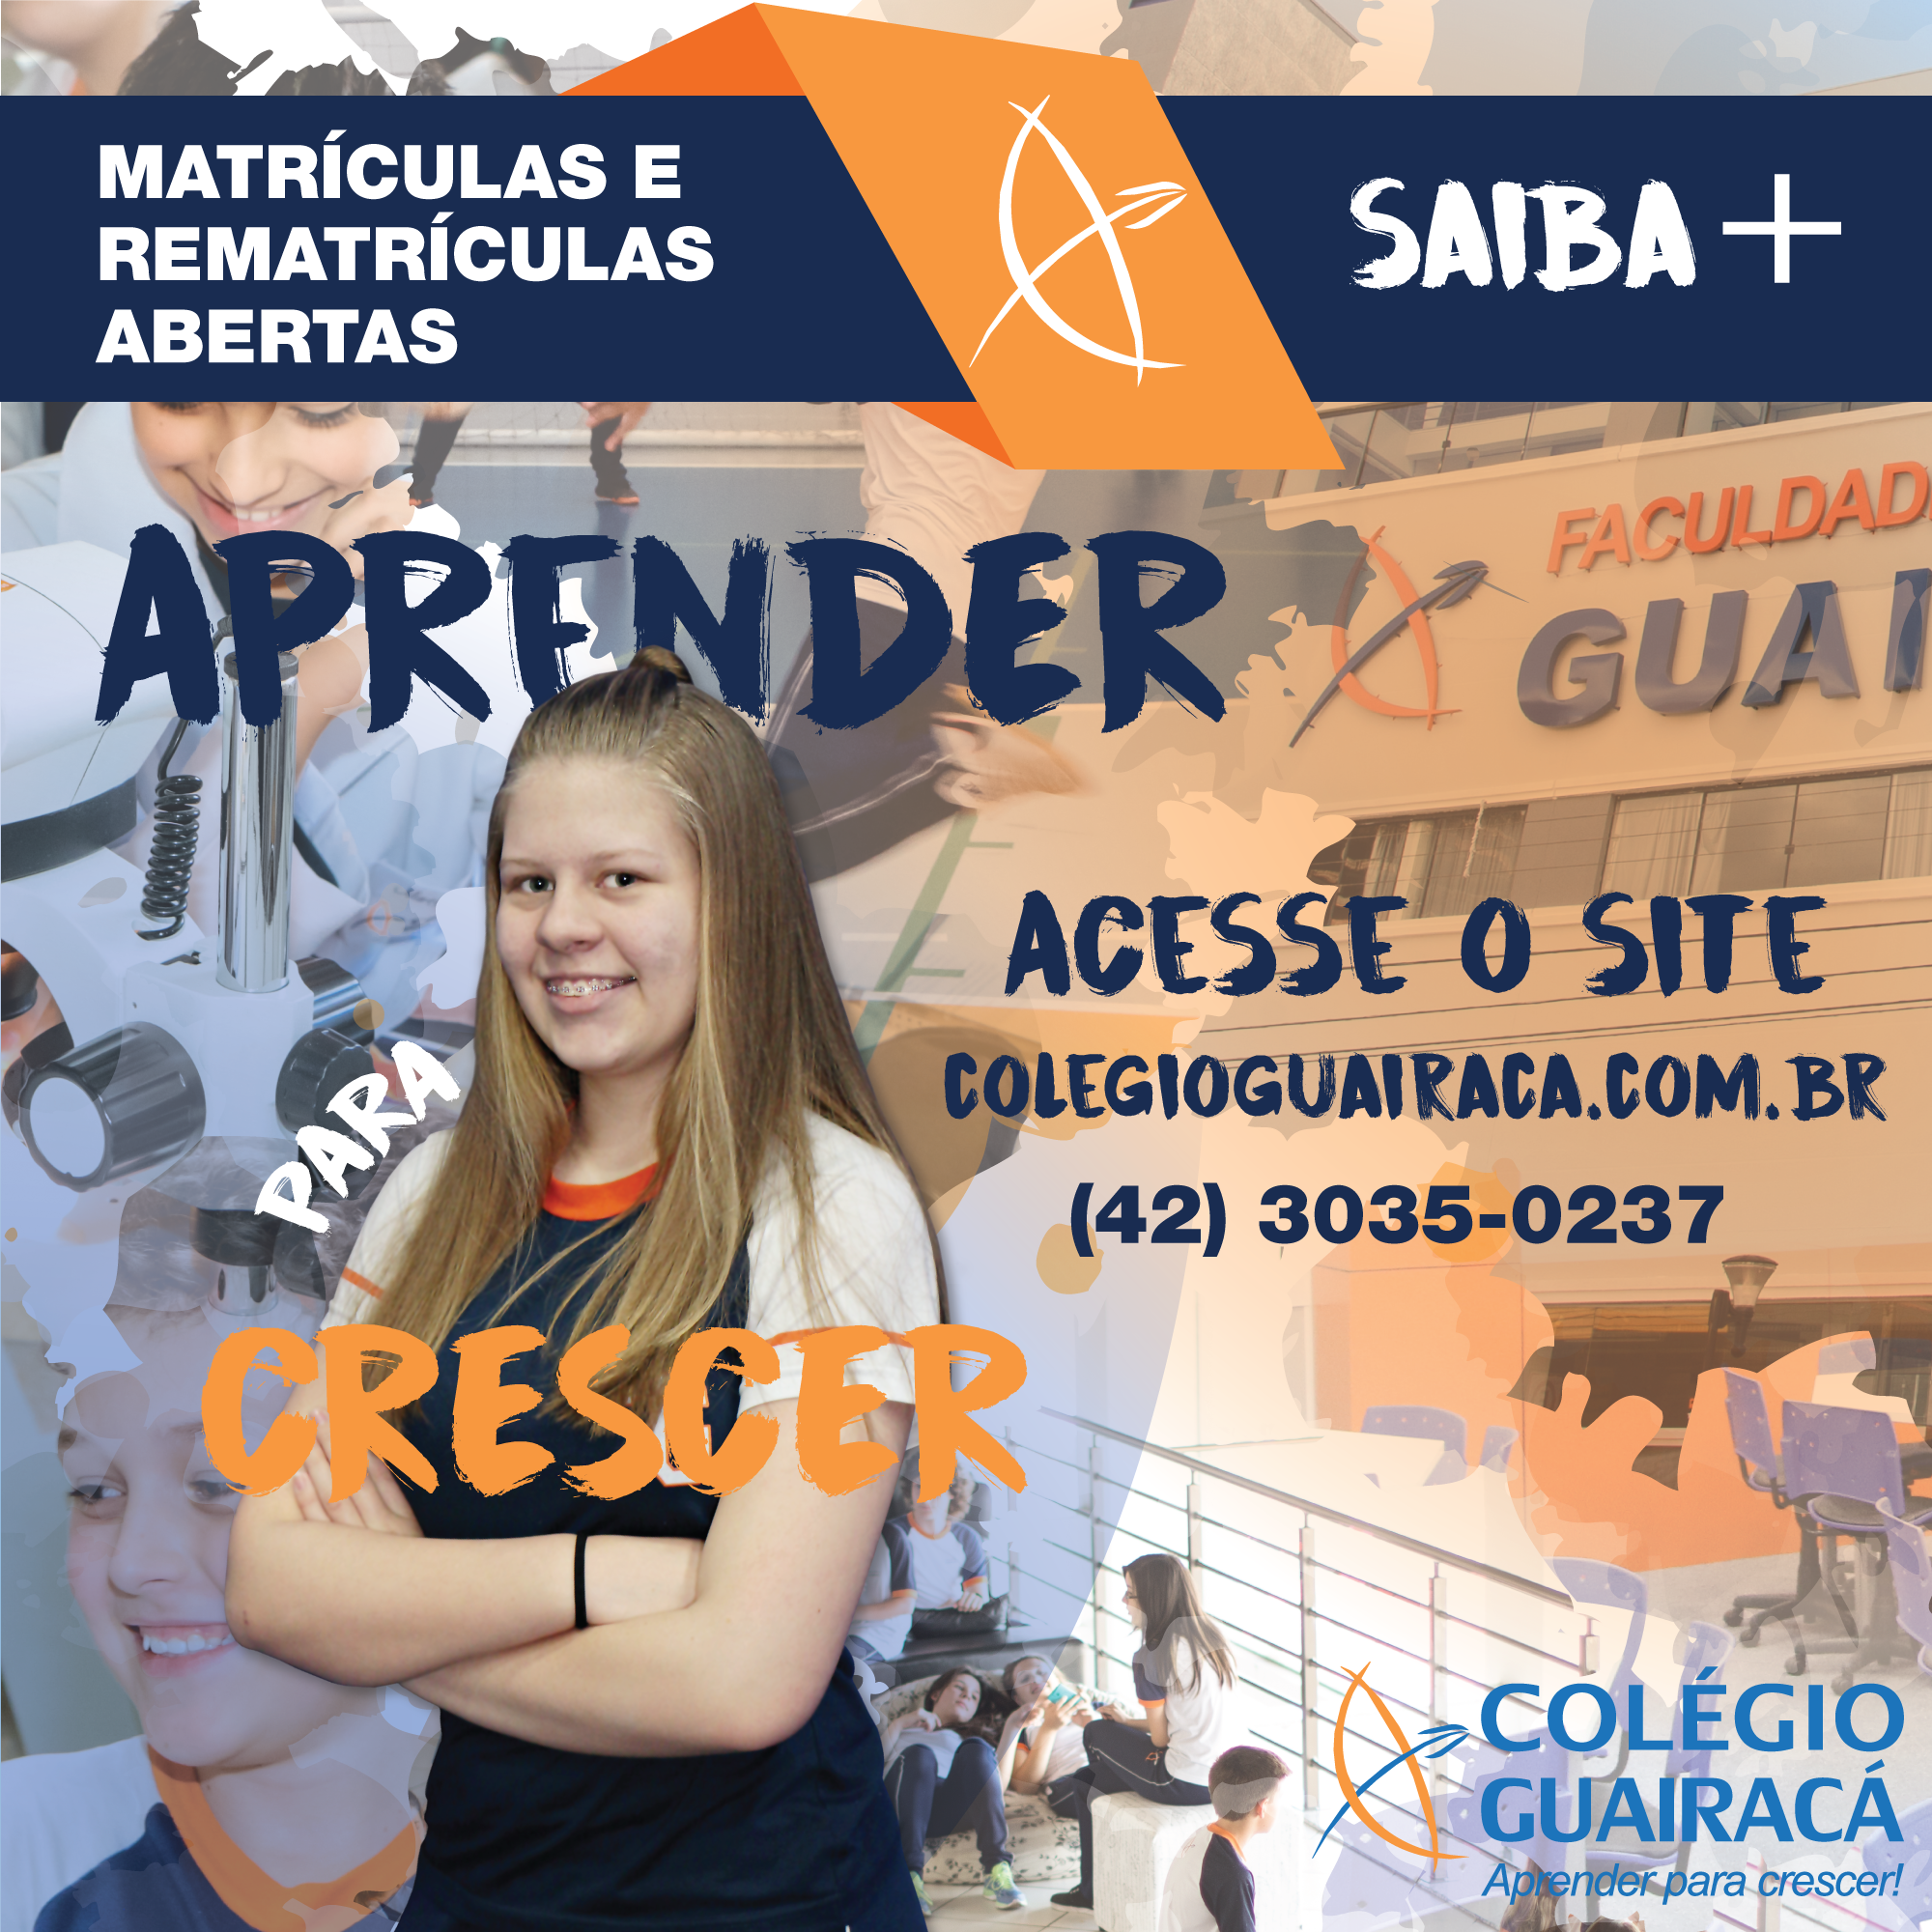 Colégio Guairacá está com matrículas abertas para 2018